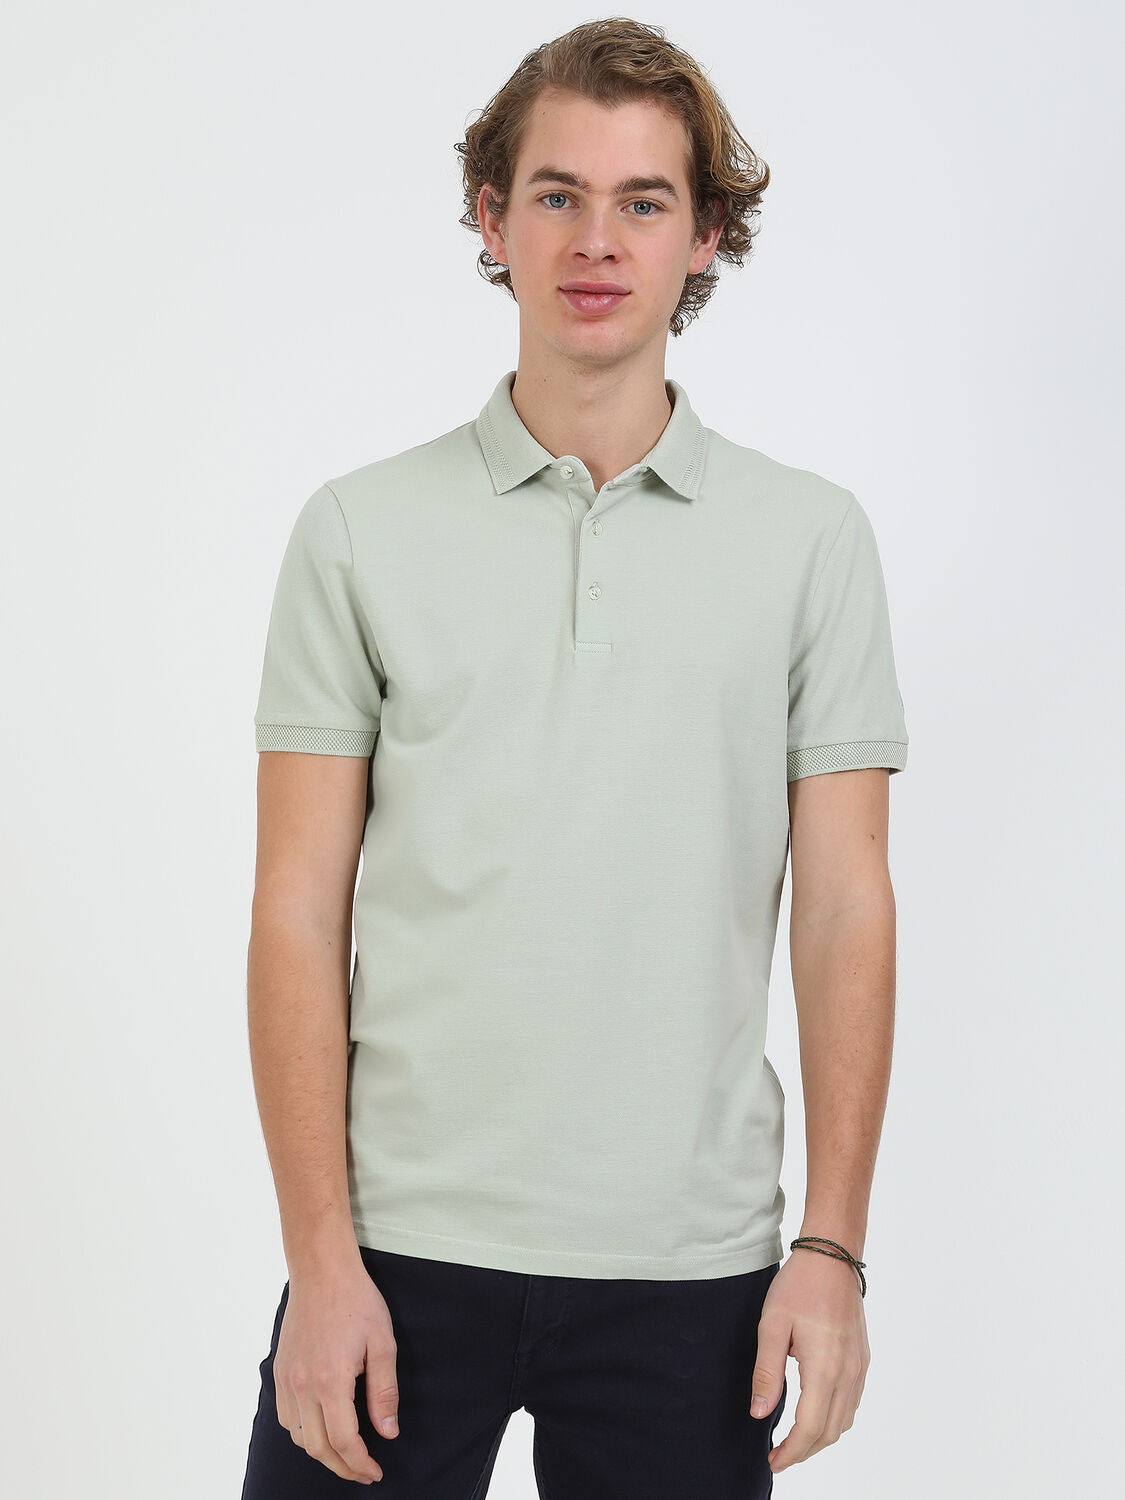 Nil Yeşili Düz Polo Yaka %100 Pamuk T-Shirt